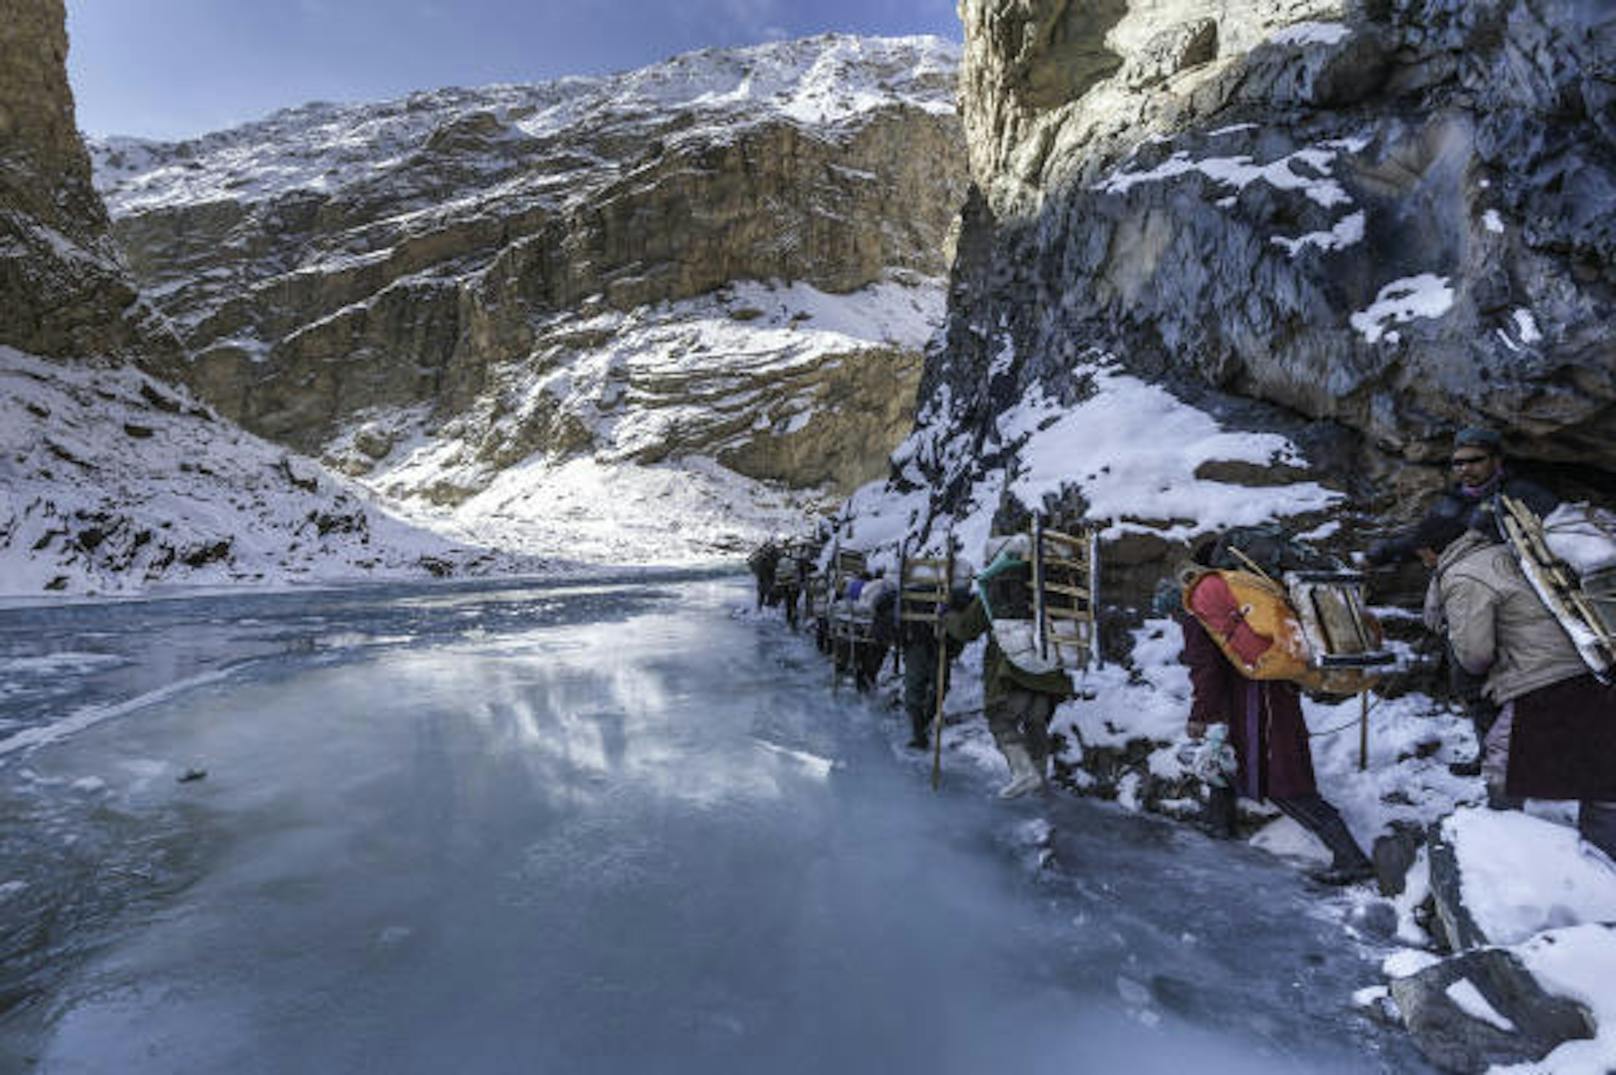 <b>Chadar Trek, Indien:</b> Wer bereit ist, in eisiger Kälte (-5 bis -35 Grad) über einen fast vollständig gefrorenen Fluss zu wandern, der findet im nordindischen Ladakh-Gebiet die passende Herausforderung. In den kurvenreichen Schluchten des Zanskar verbergen sich uralte Höhlen. Distanz: 105 Kilometer, Dauer: 6 bis 9 Tage, Anforderung: schwer